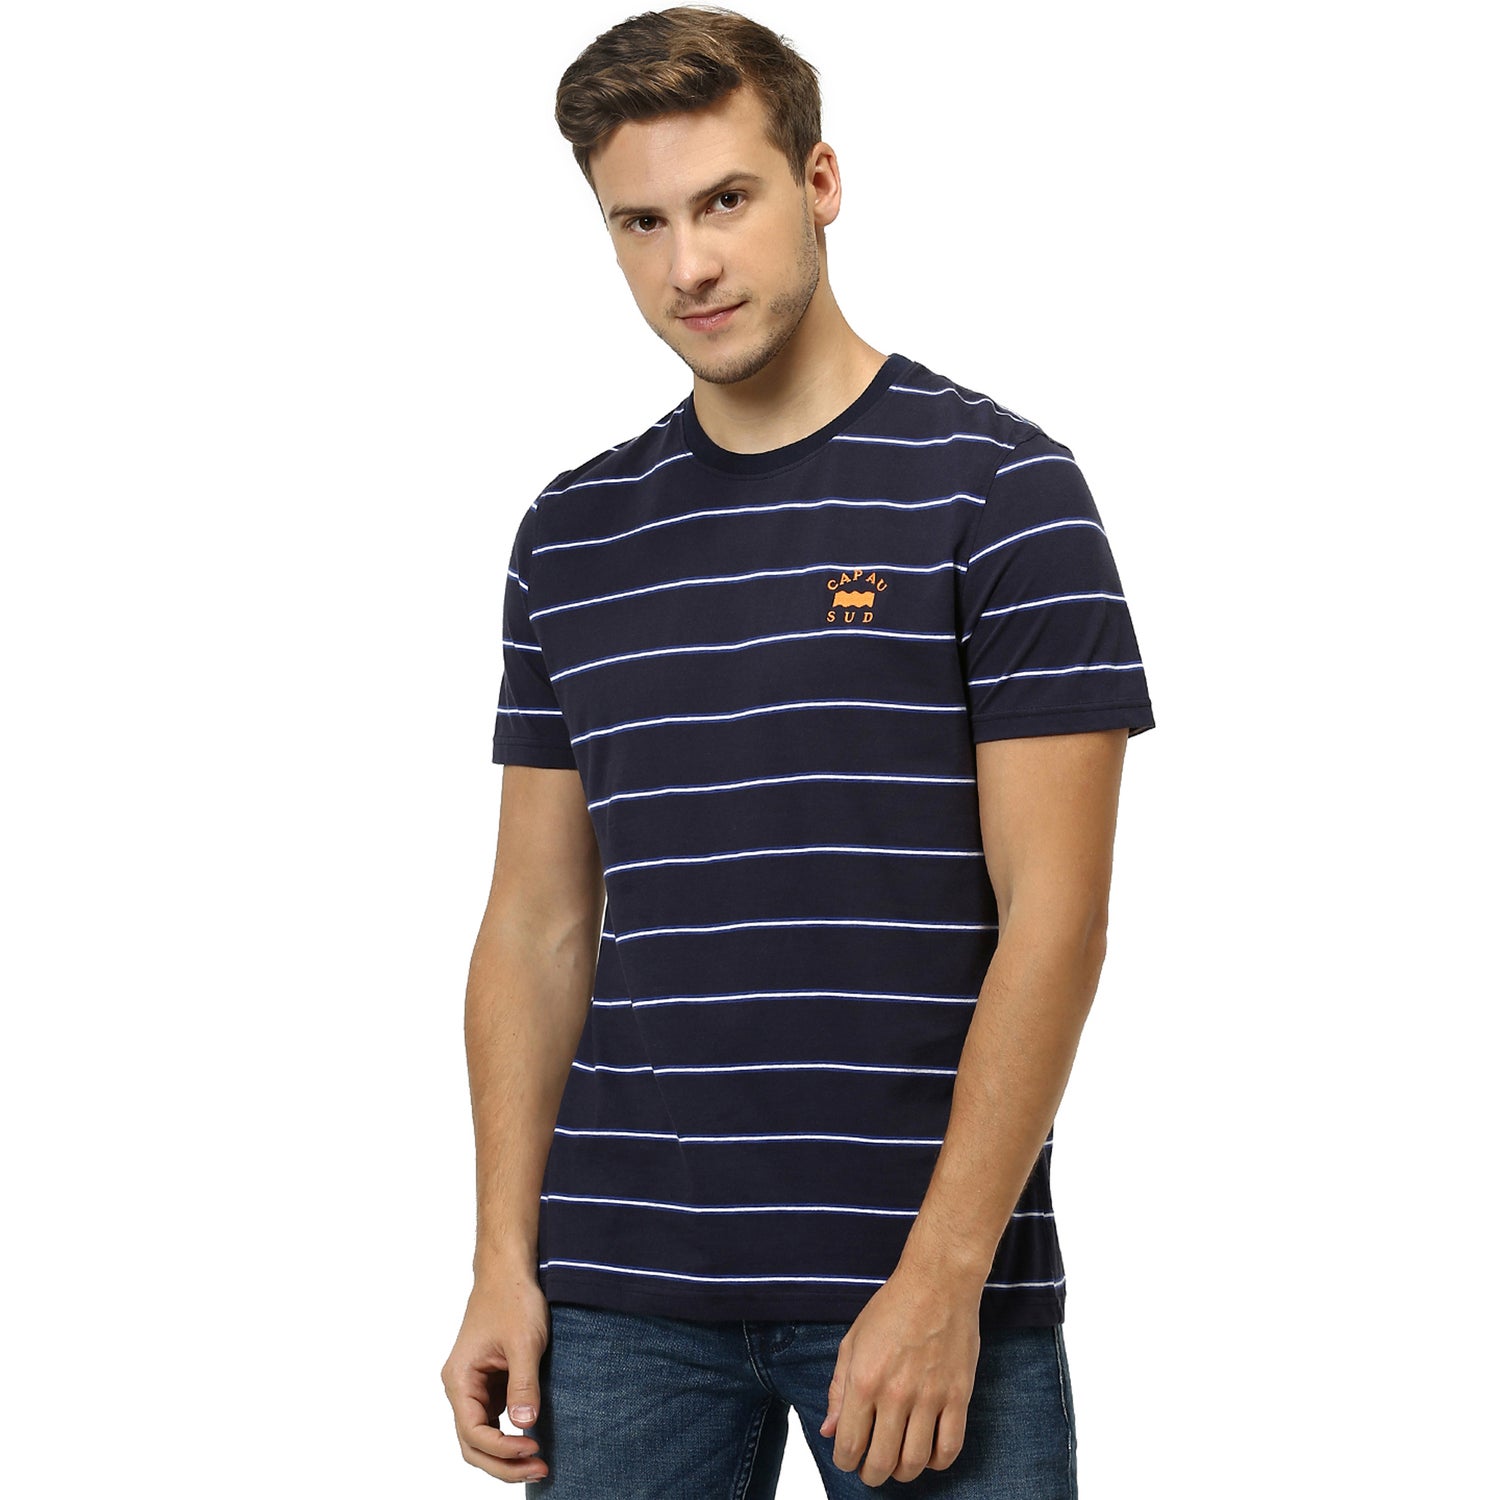 Navy Blue Striped Round Neck Pure Cotton T-shirt (RECUTEIN)